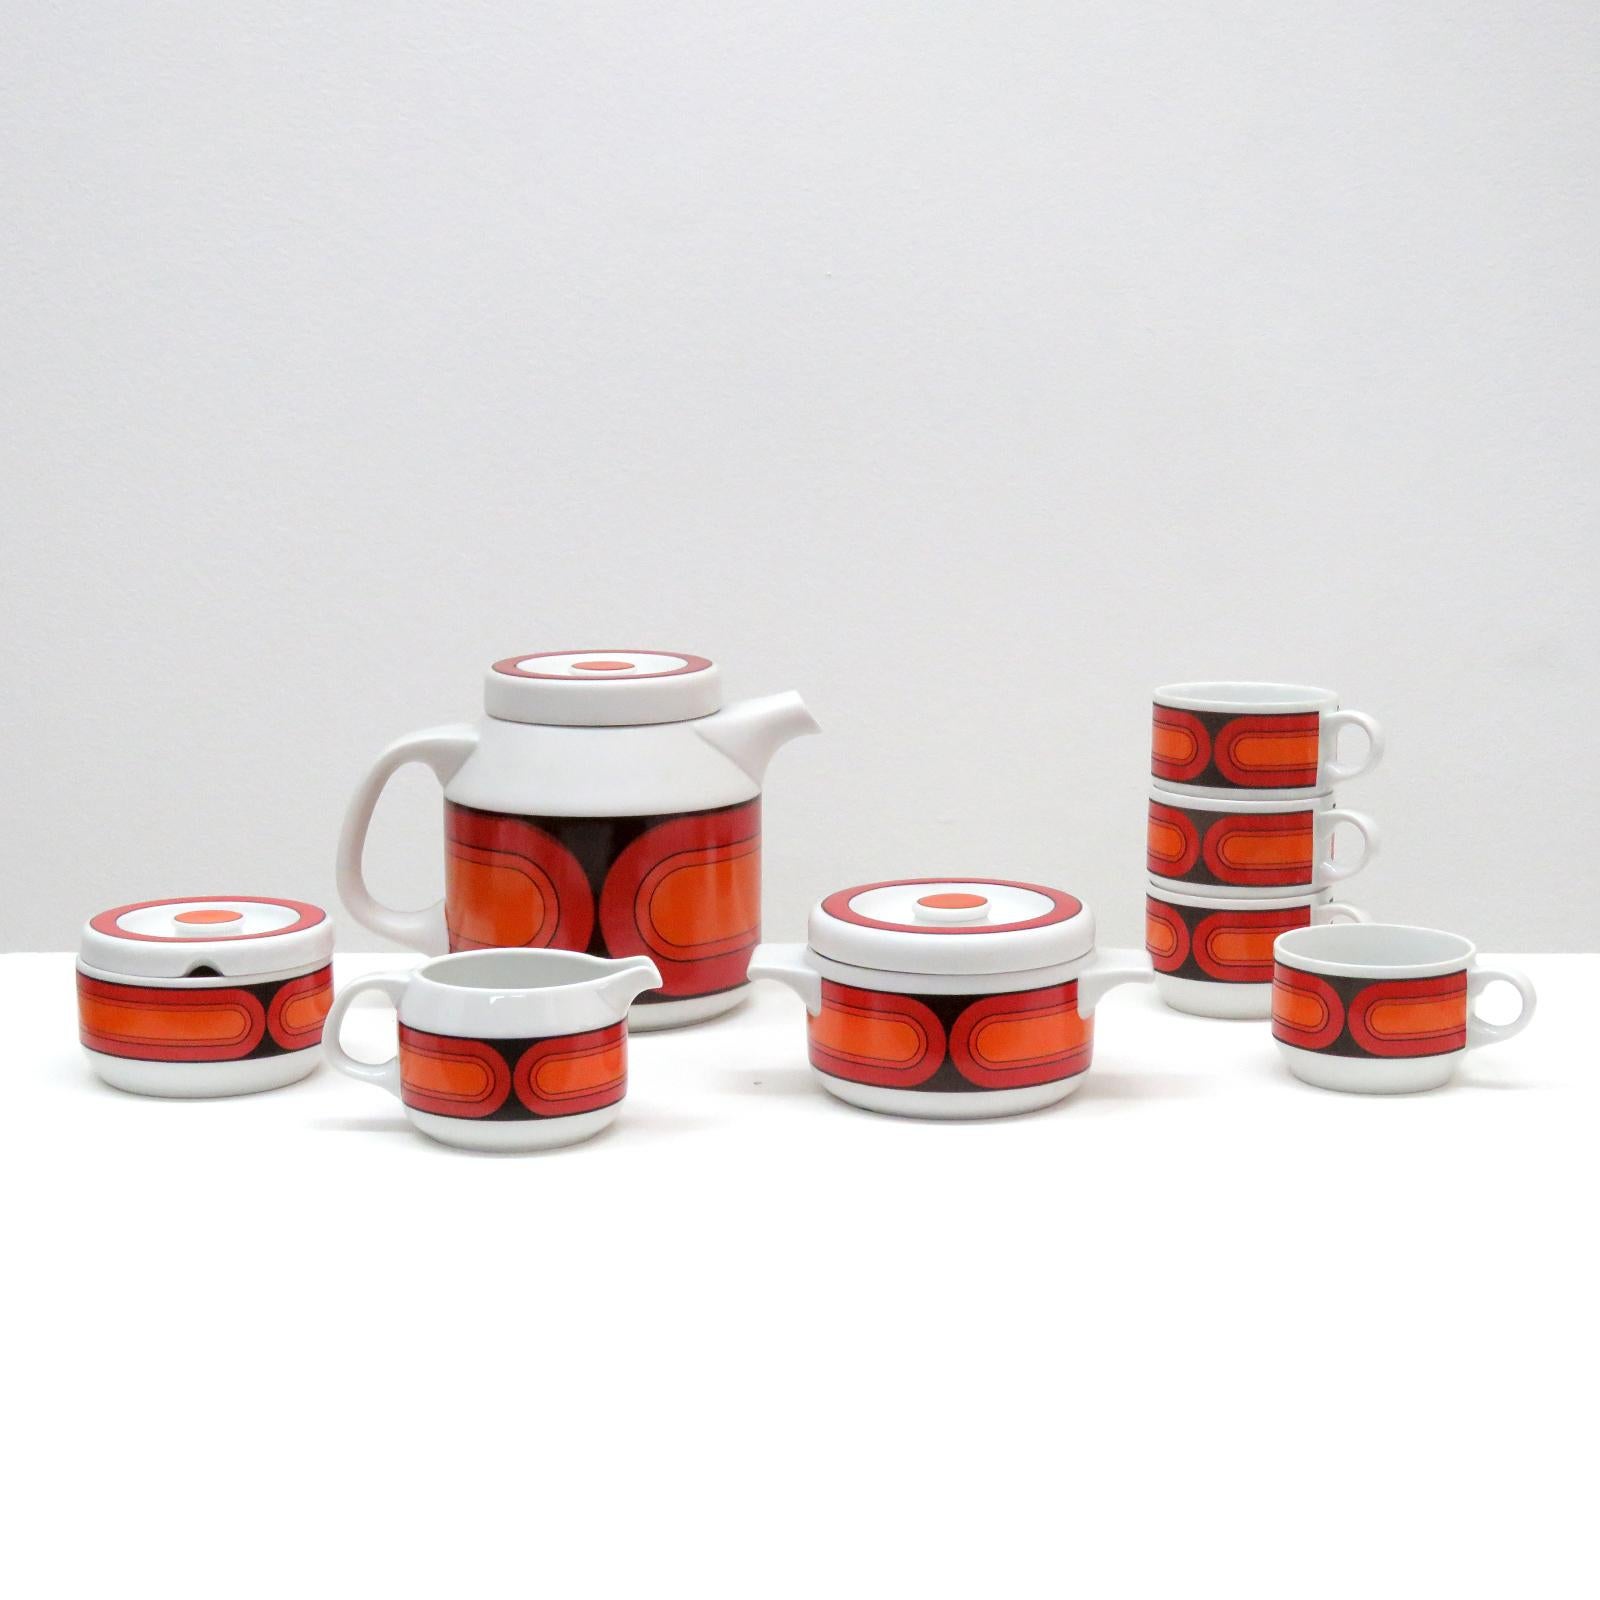 Superbe service à thé/café de 11 pièces en porcelaine 'Sicilia', forme 3000, réalisé par Hans Theo Baumann pour Arzberg Porzellan, Allemagne. L'ensemble comprend une théière/café avec couvercle, une petite casserole avec couvercle (toutes deux